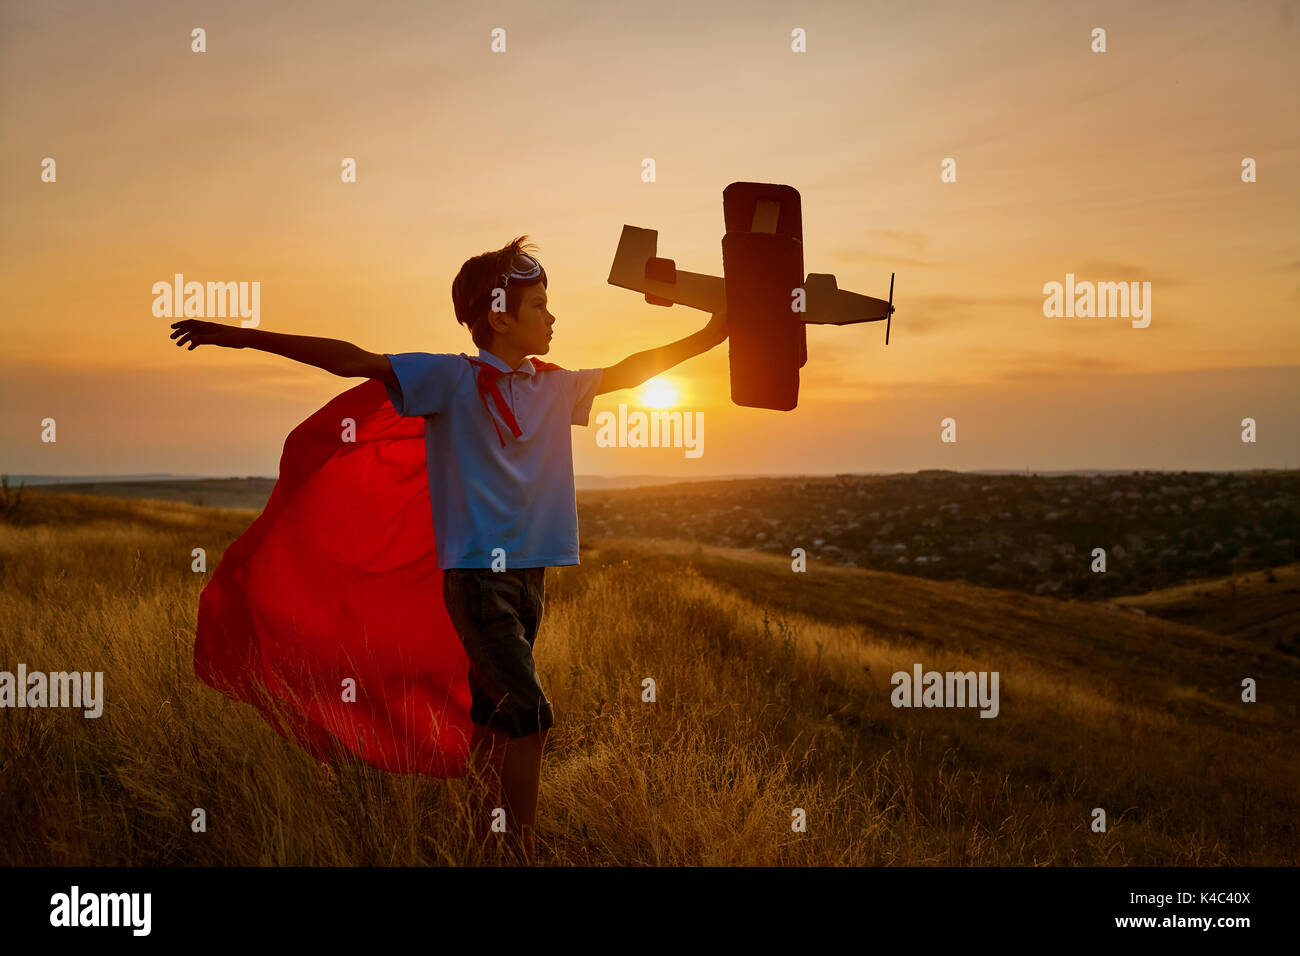 Un ragazzo felice in un costume da supereroe sta giocando con un aeroplano. Foto Stock